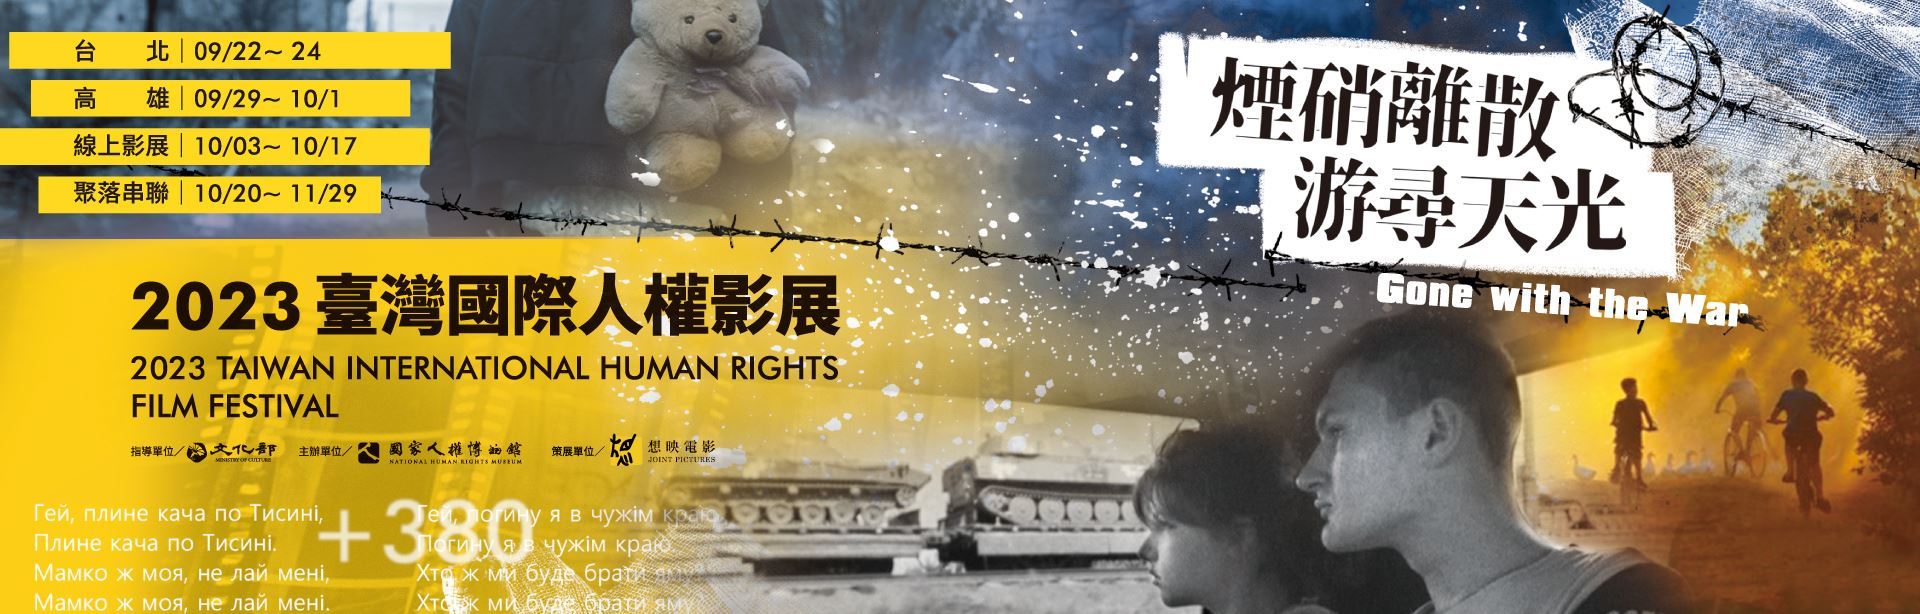 2023 Taiwan International Human Rights Film Festival kicks off